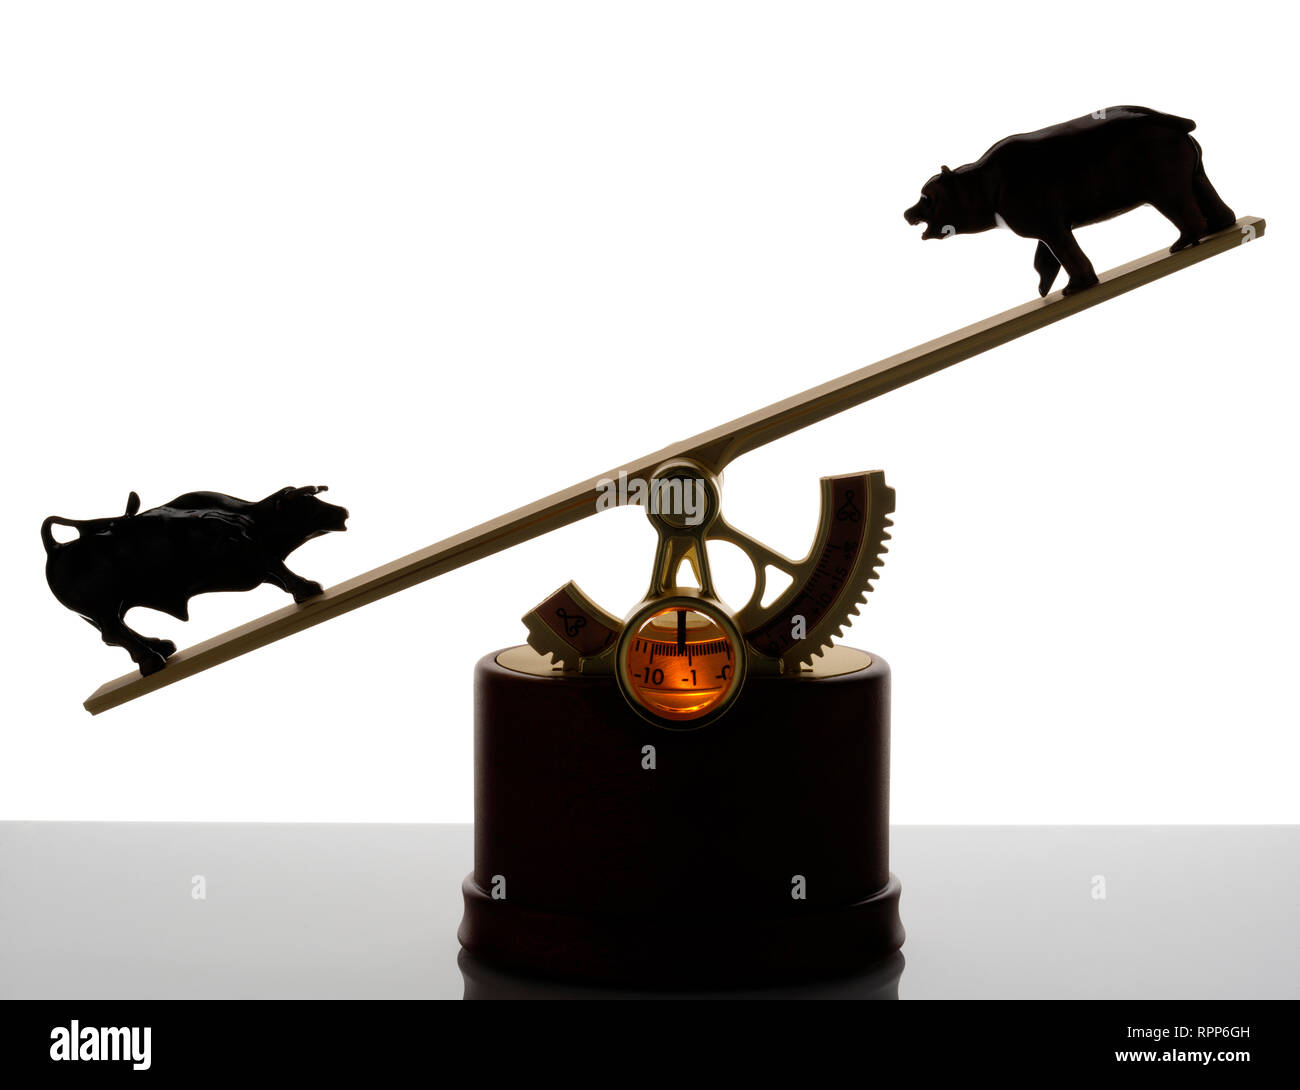 Le marché, jouet exécutif ( !) qui affiche le solde de la bourse. Bull et bear à extrémités d'une balançoire. Banque D'Images